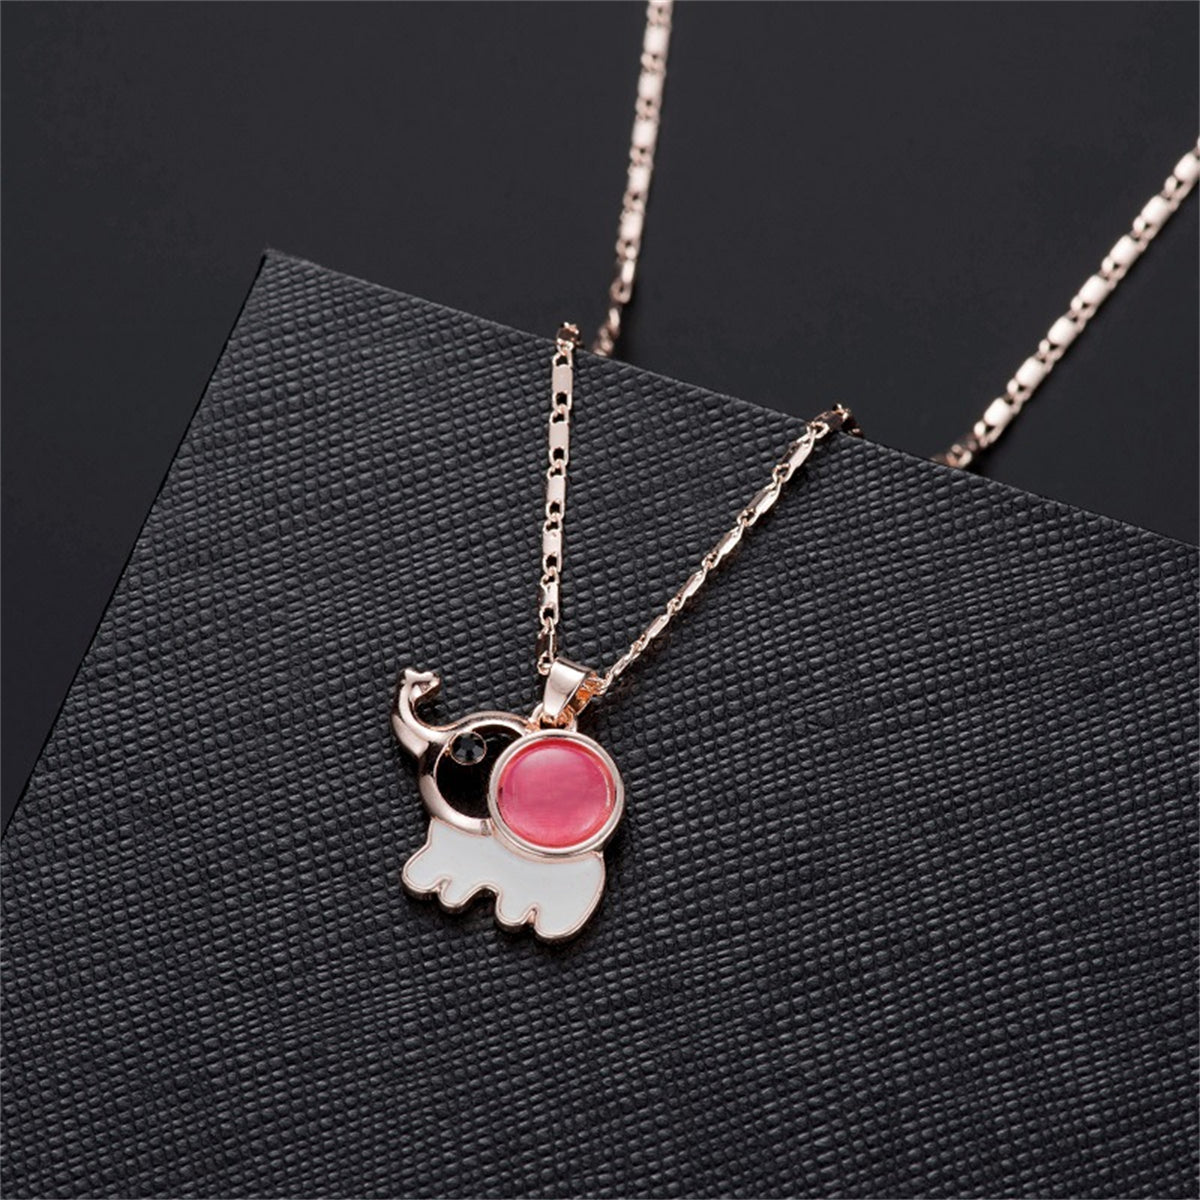 Pink Rose Quartz & Cubic Zirconia Elephant Pendant Necklace Set